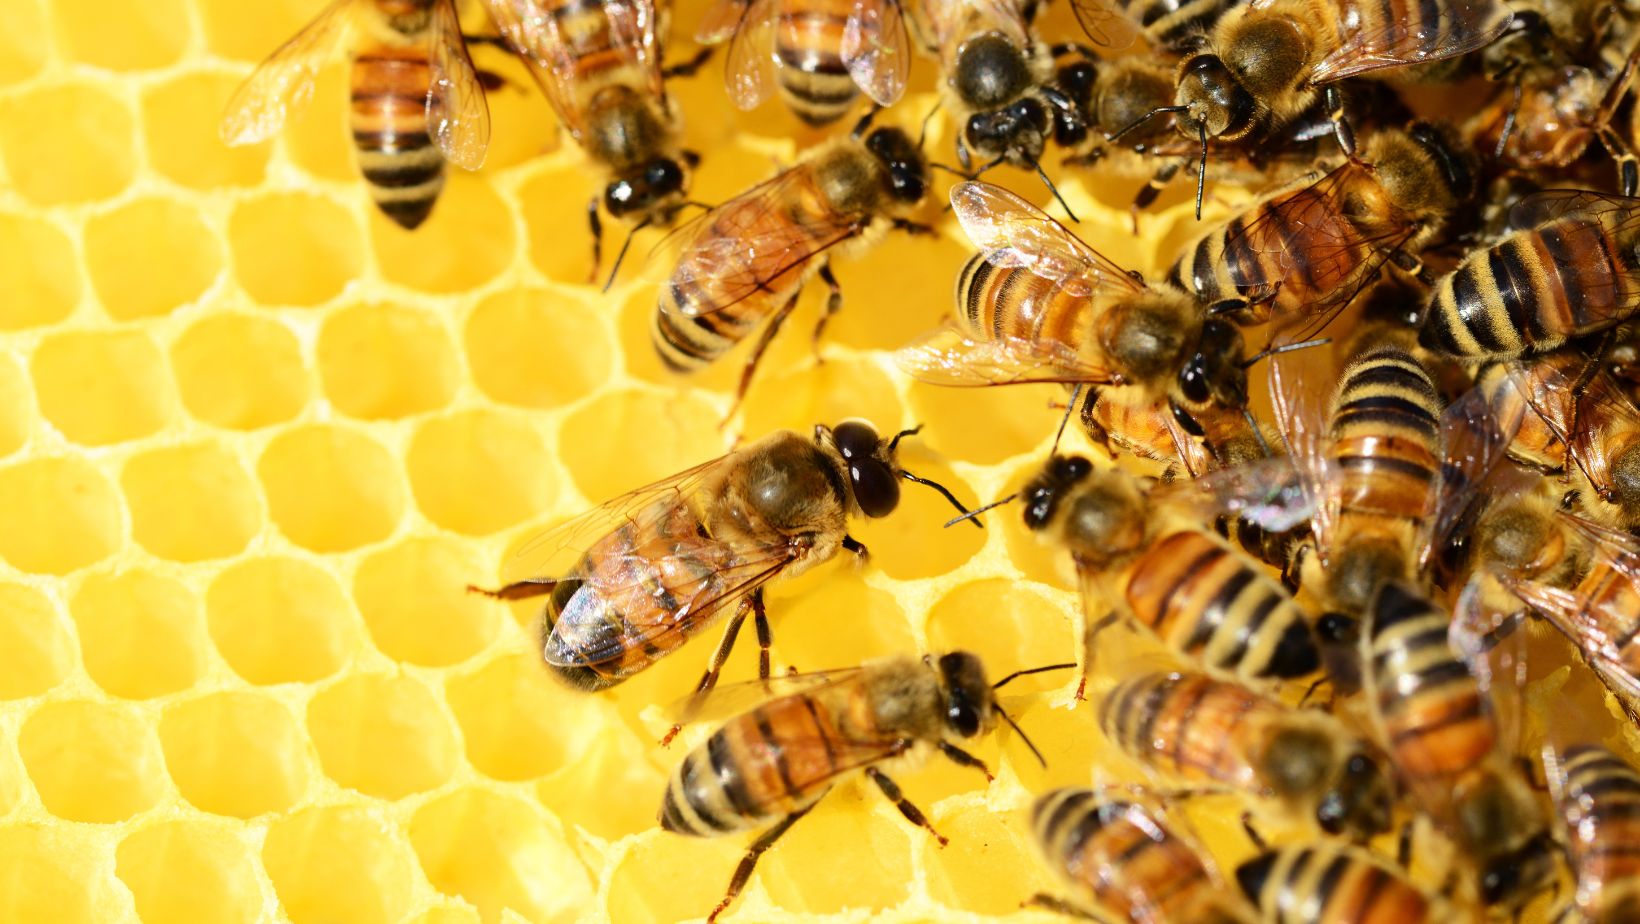 cuantas abejas se necesitan para hacer un litro de miel el viaje de una abeja